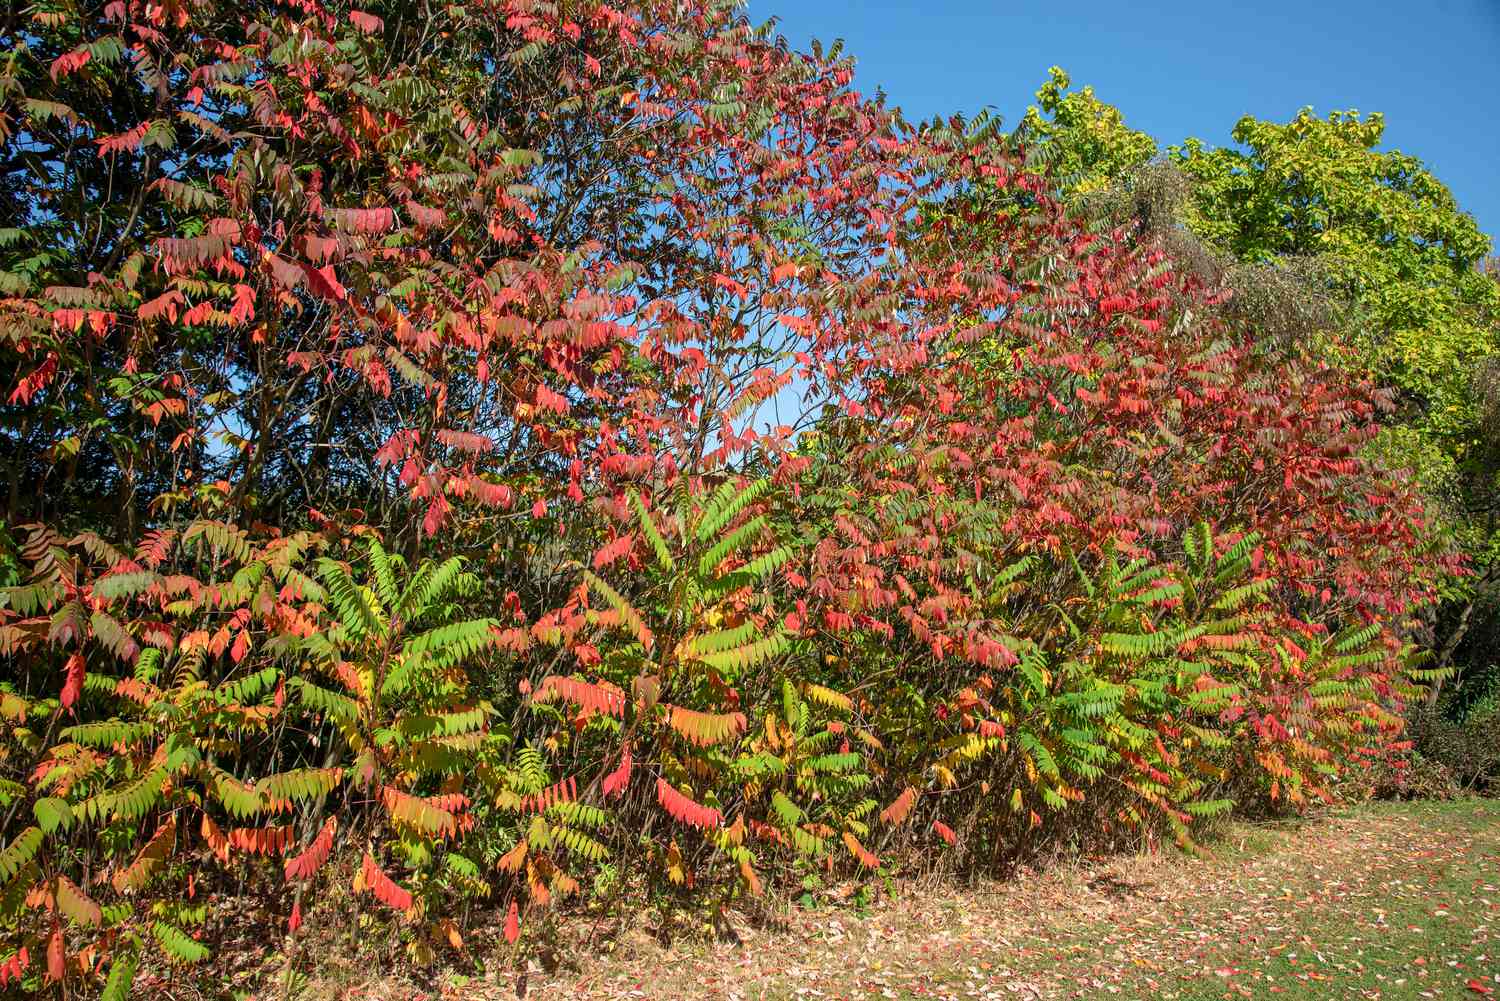 Arbusto de zumaque Staghorn con ramas altas que forman un muro de hojas verdes, rojas y amarillas